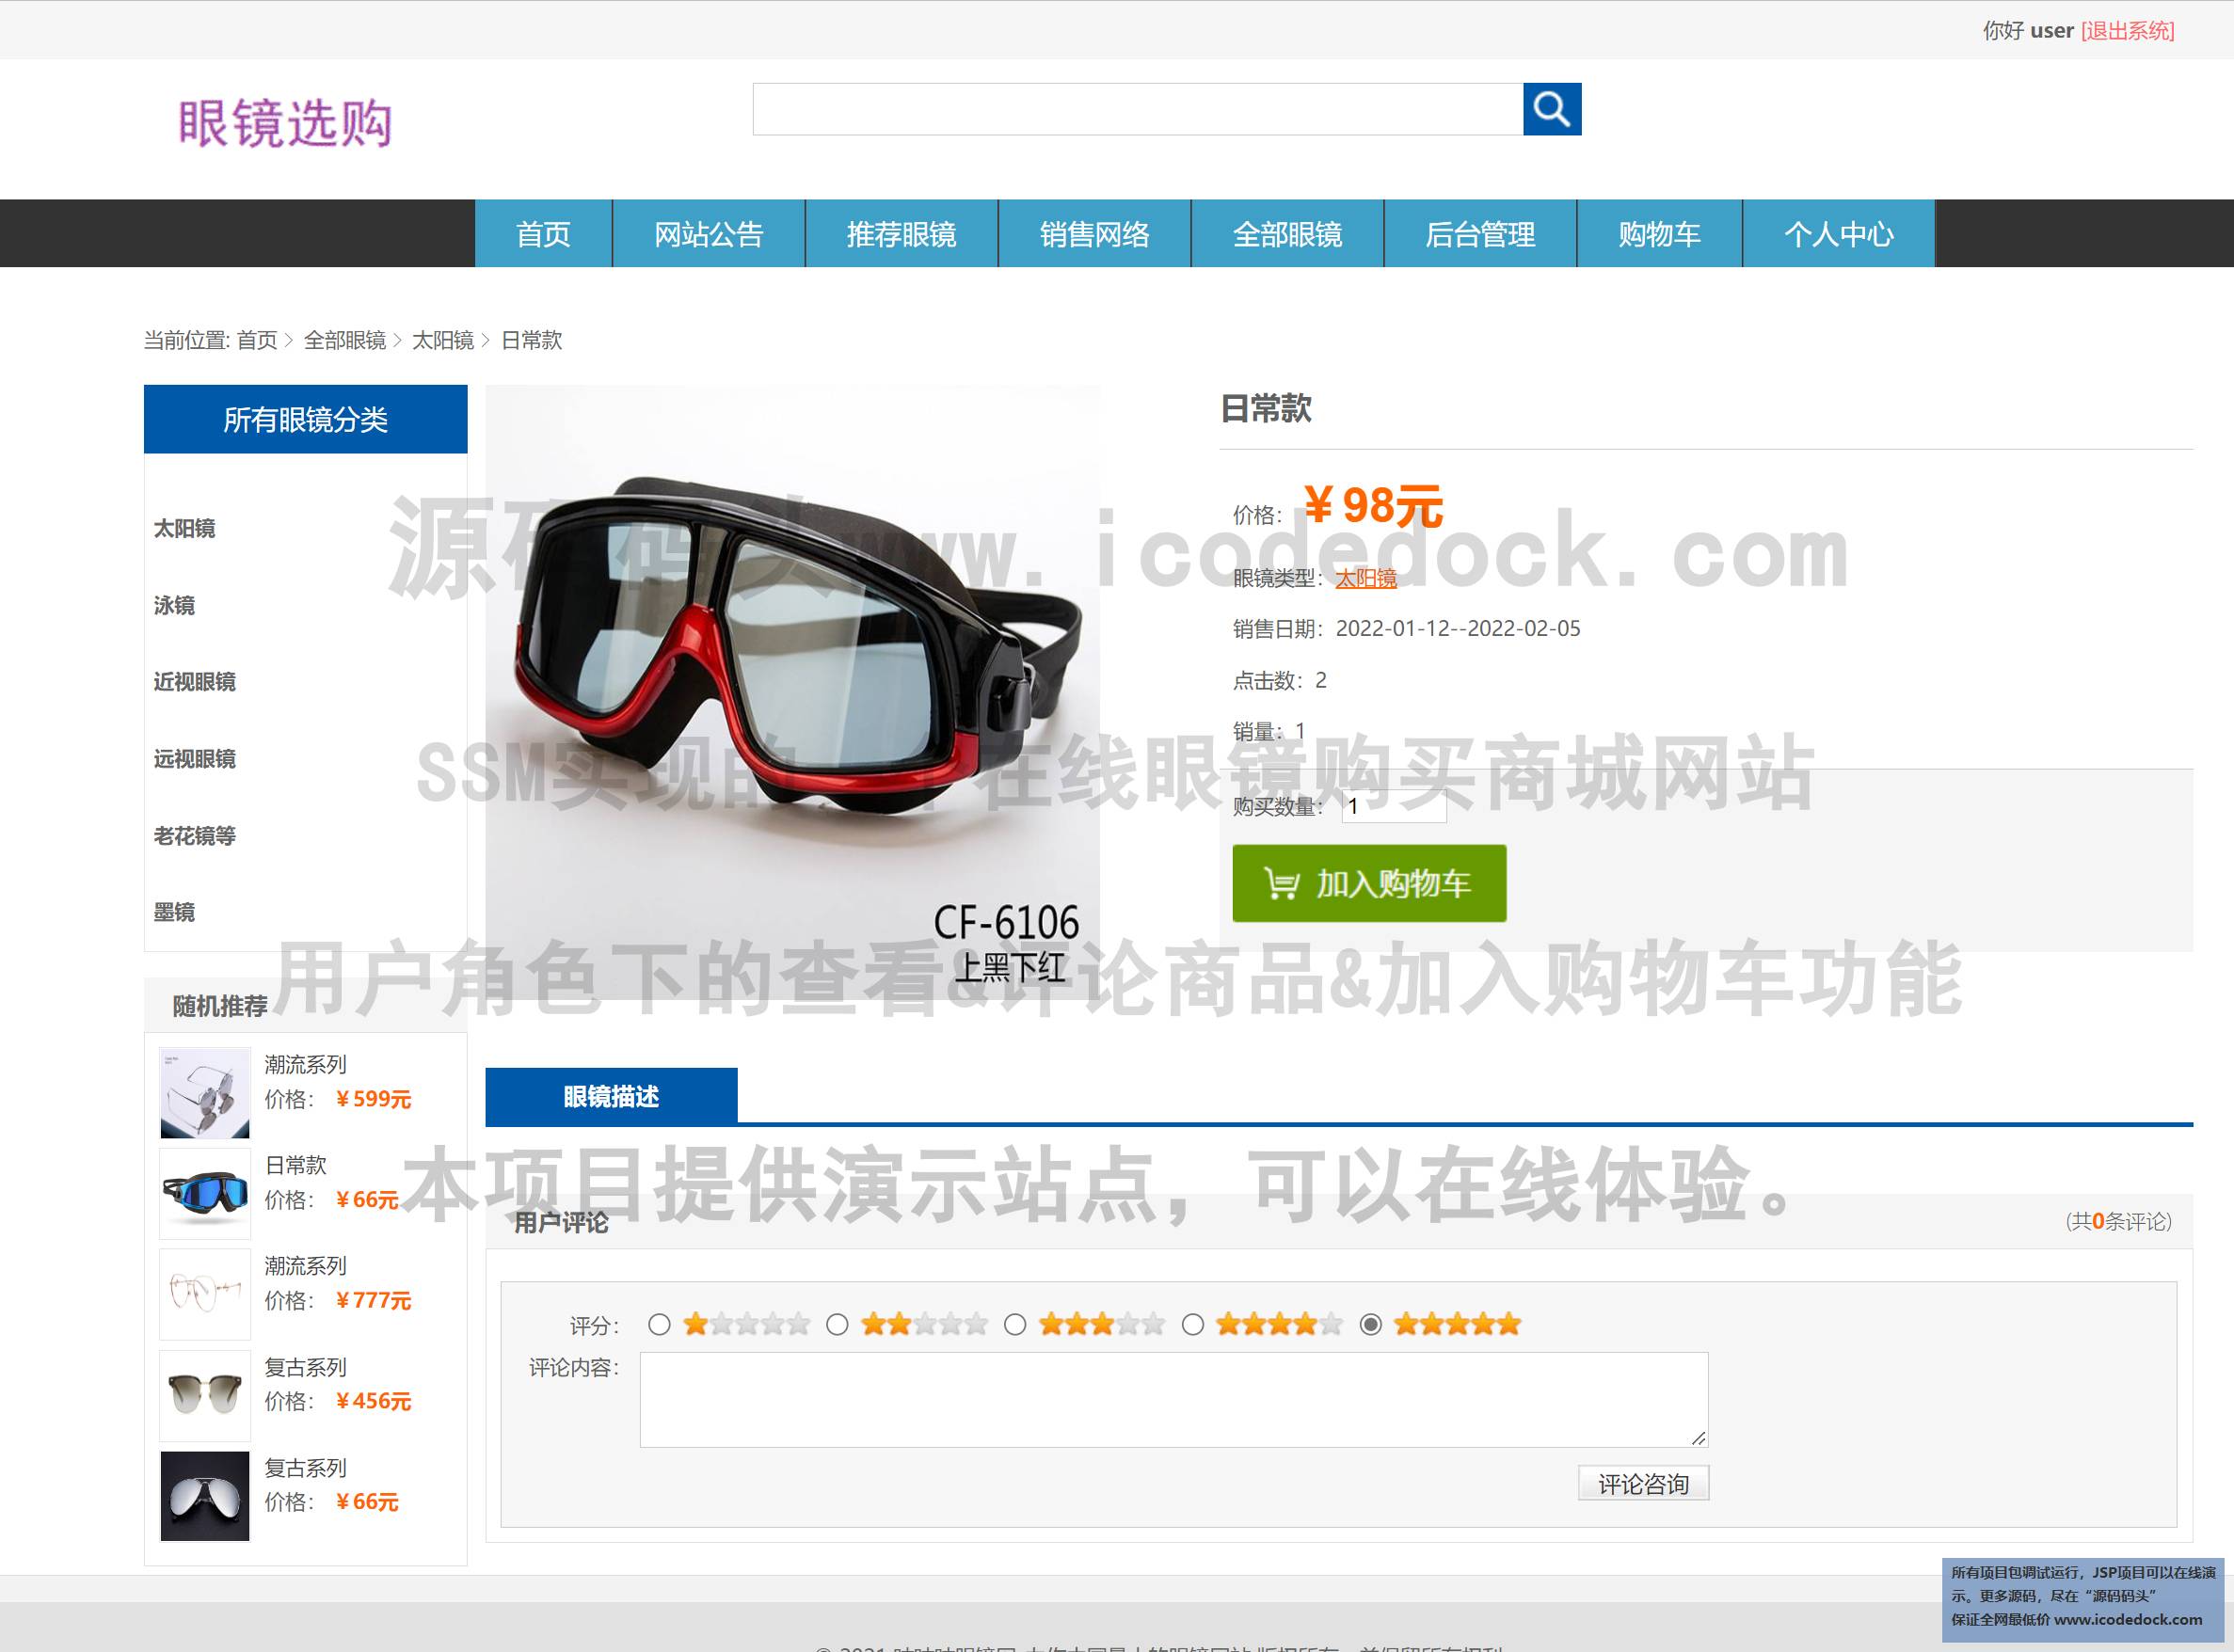 源码码头-SSM实现的一个在线眼镜购买商城网站-用户角色-查看&评论商品&加入购物车